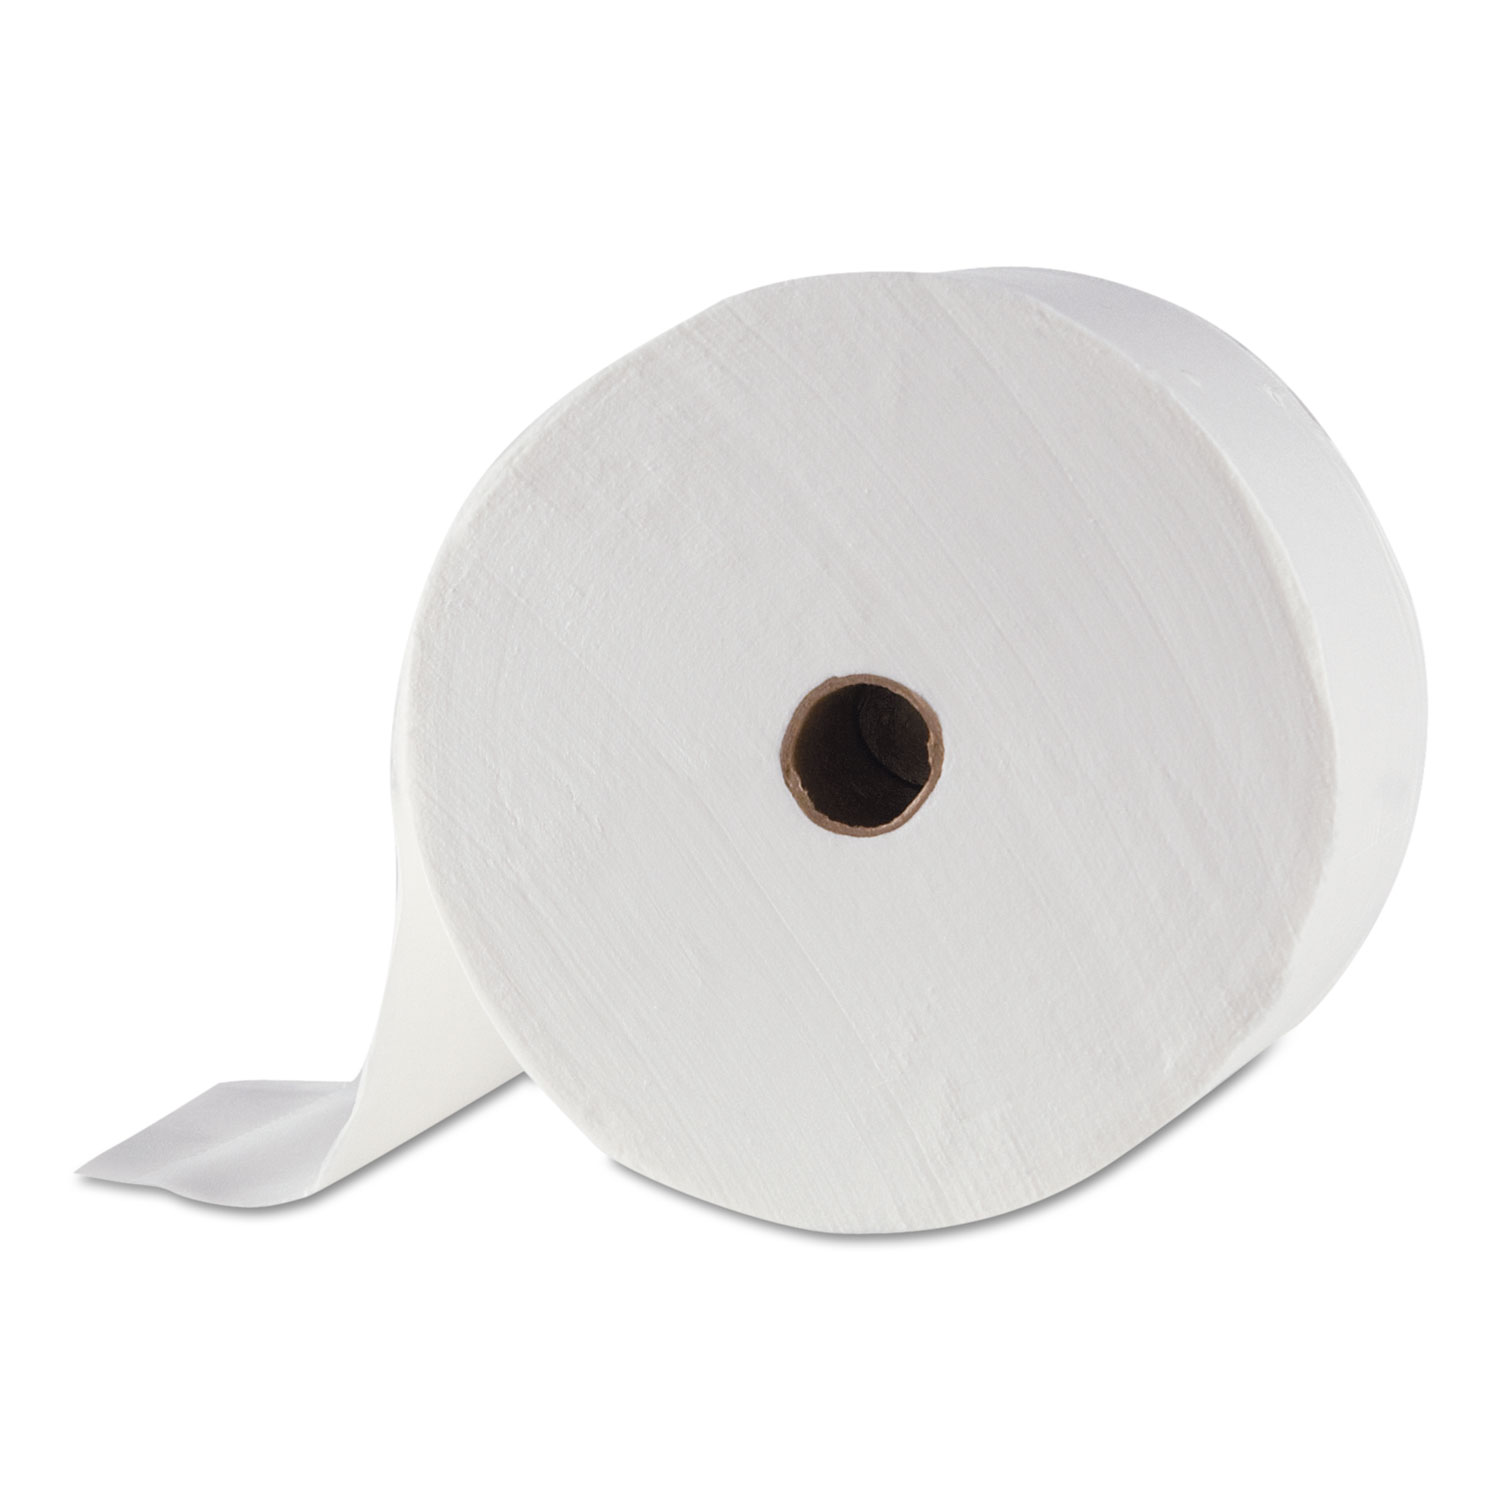  Morcon Tissue MOR M1000MS Small Core Bath Tissue, 2-Ply, White, 900 Sheets/Roll, 48 Rolls/Carton (MORM1000MS) 